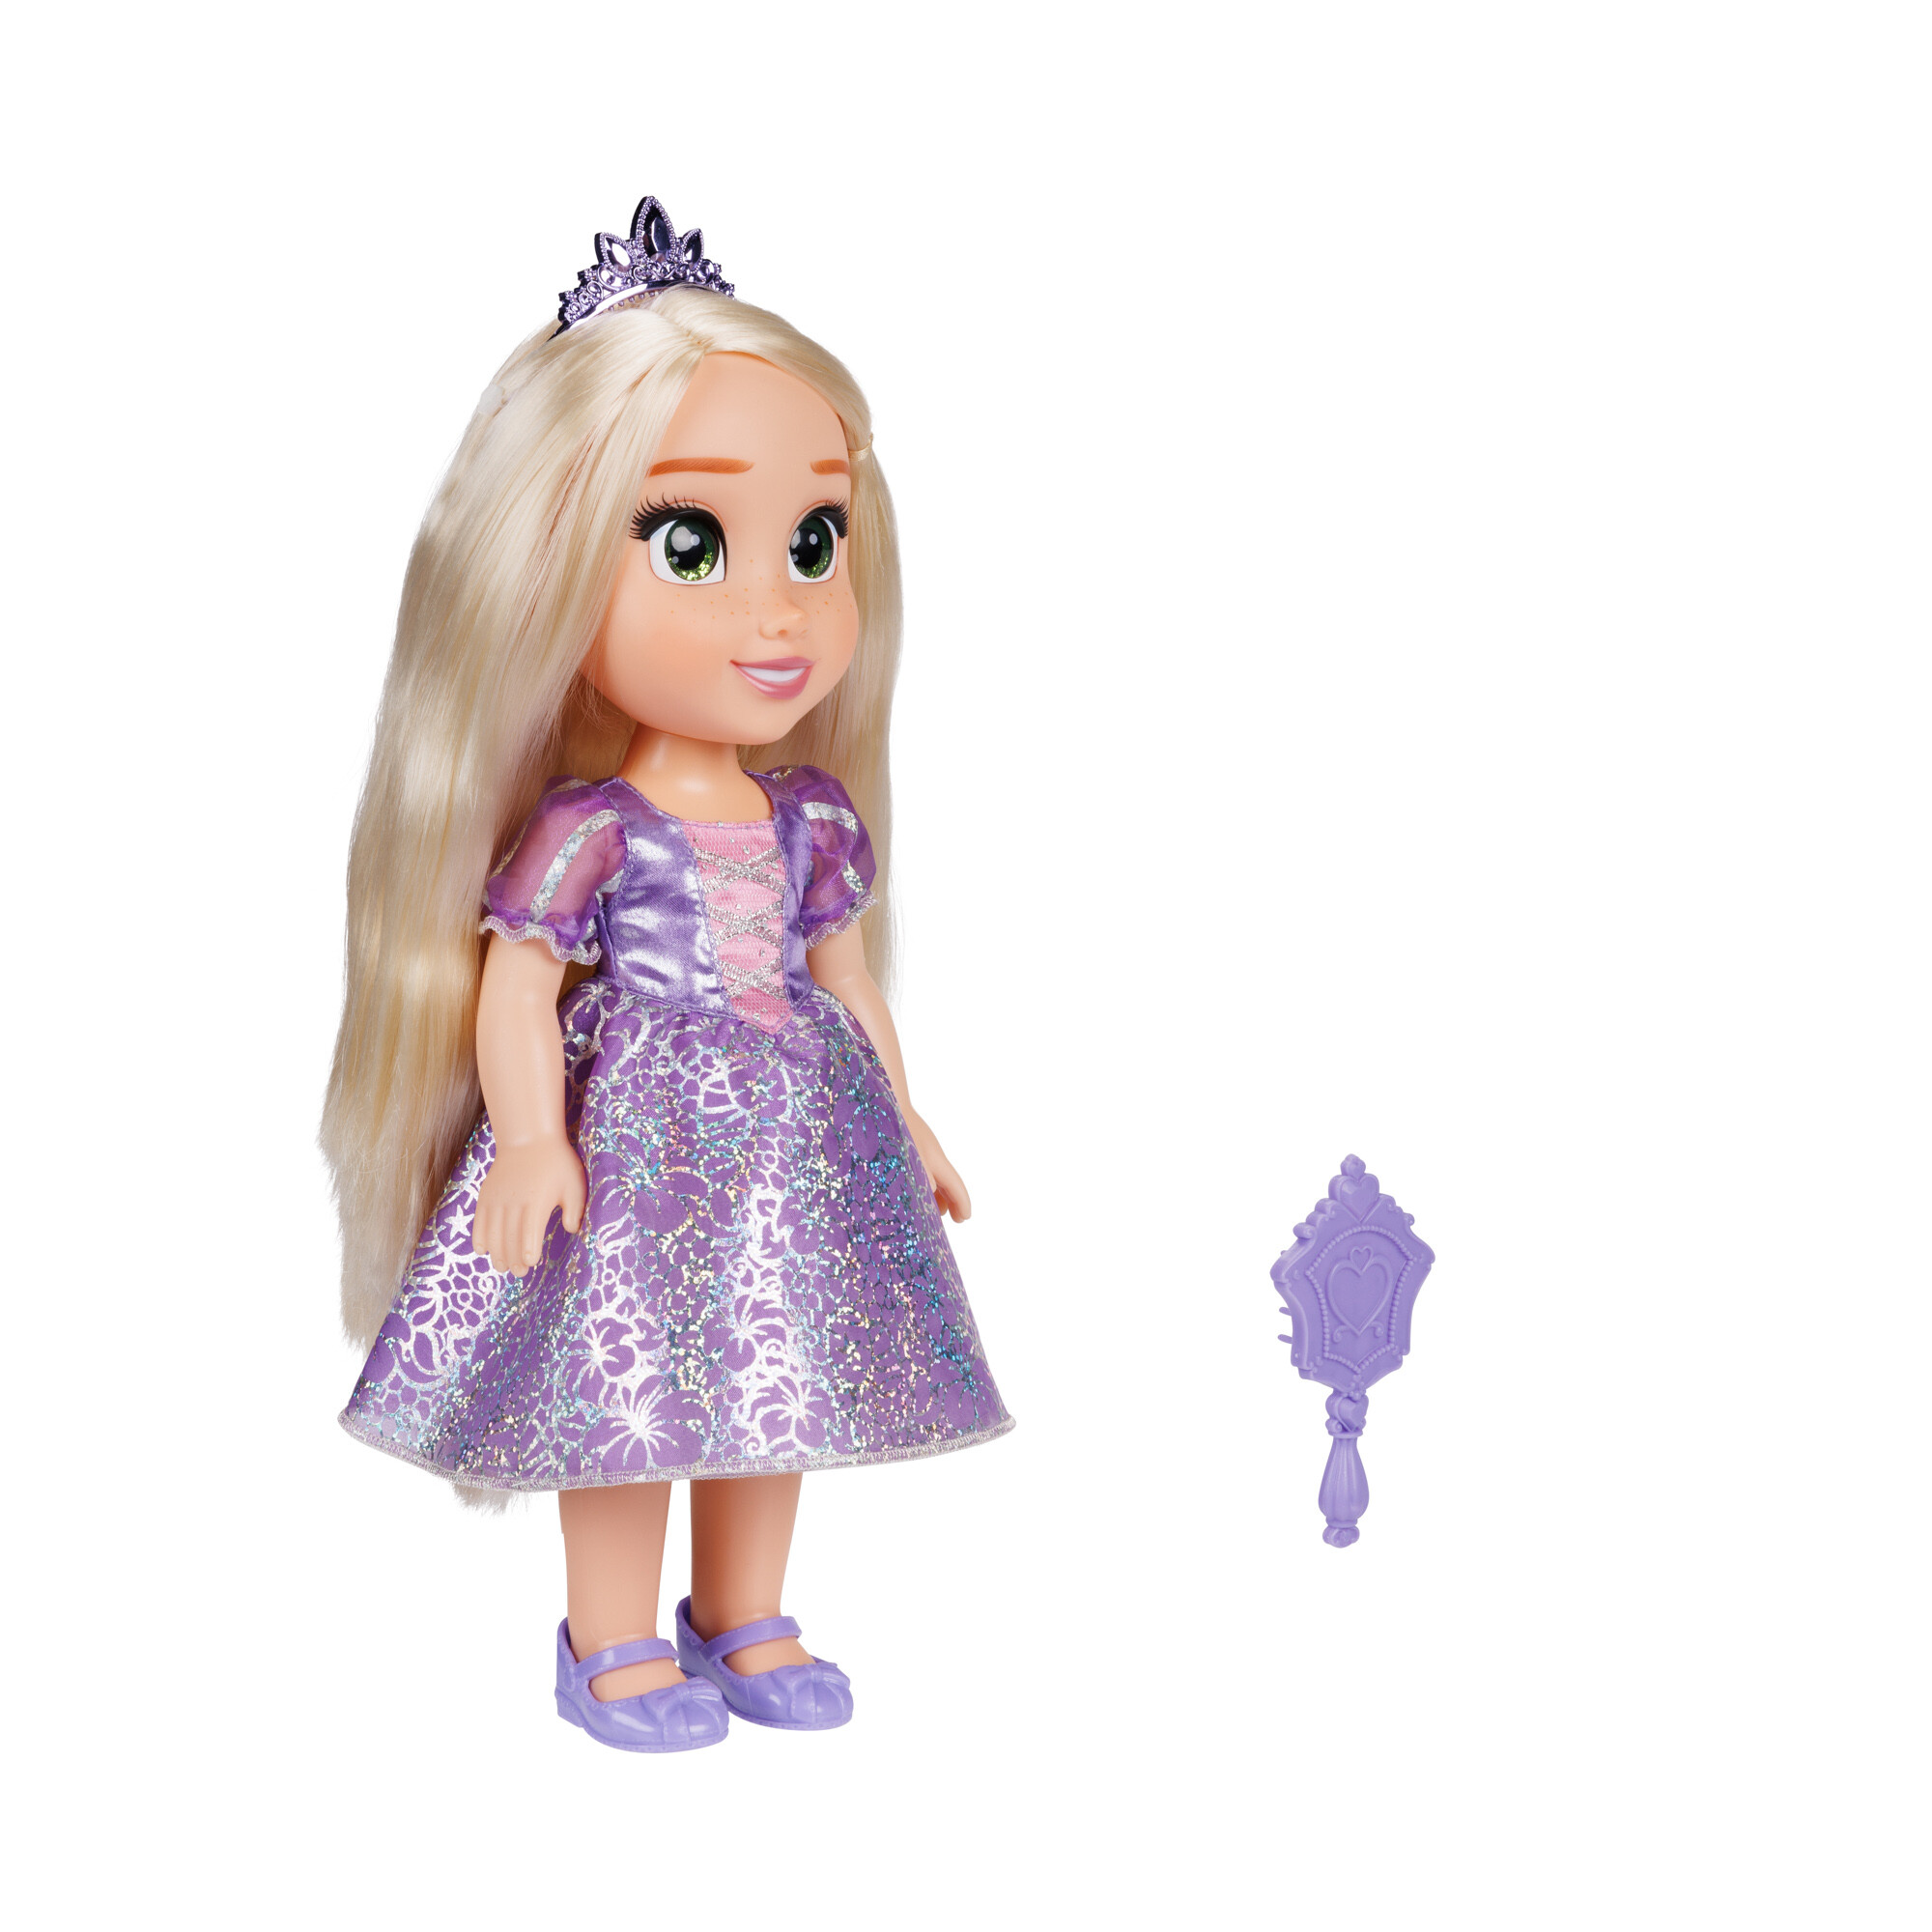 Disney princess bambola da 38 cm di rapunzel con occhi scintillanti! - DISNEY PRINCESS